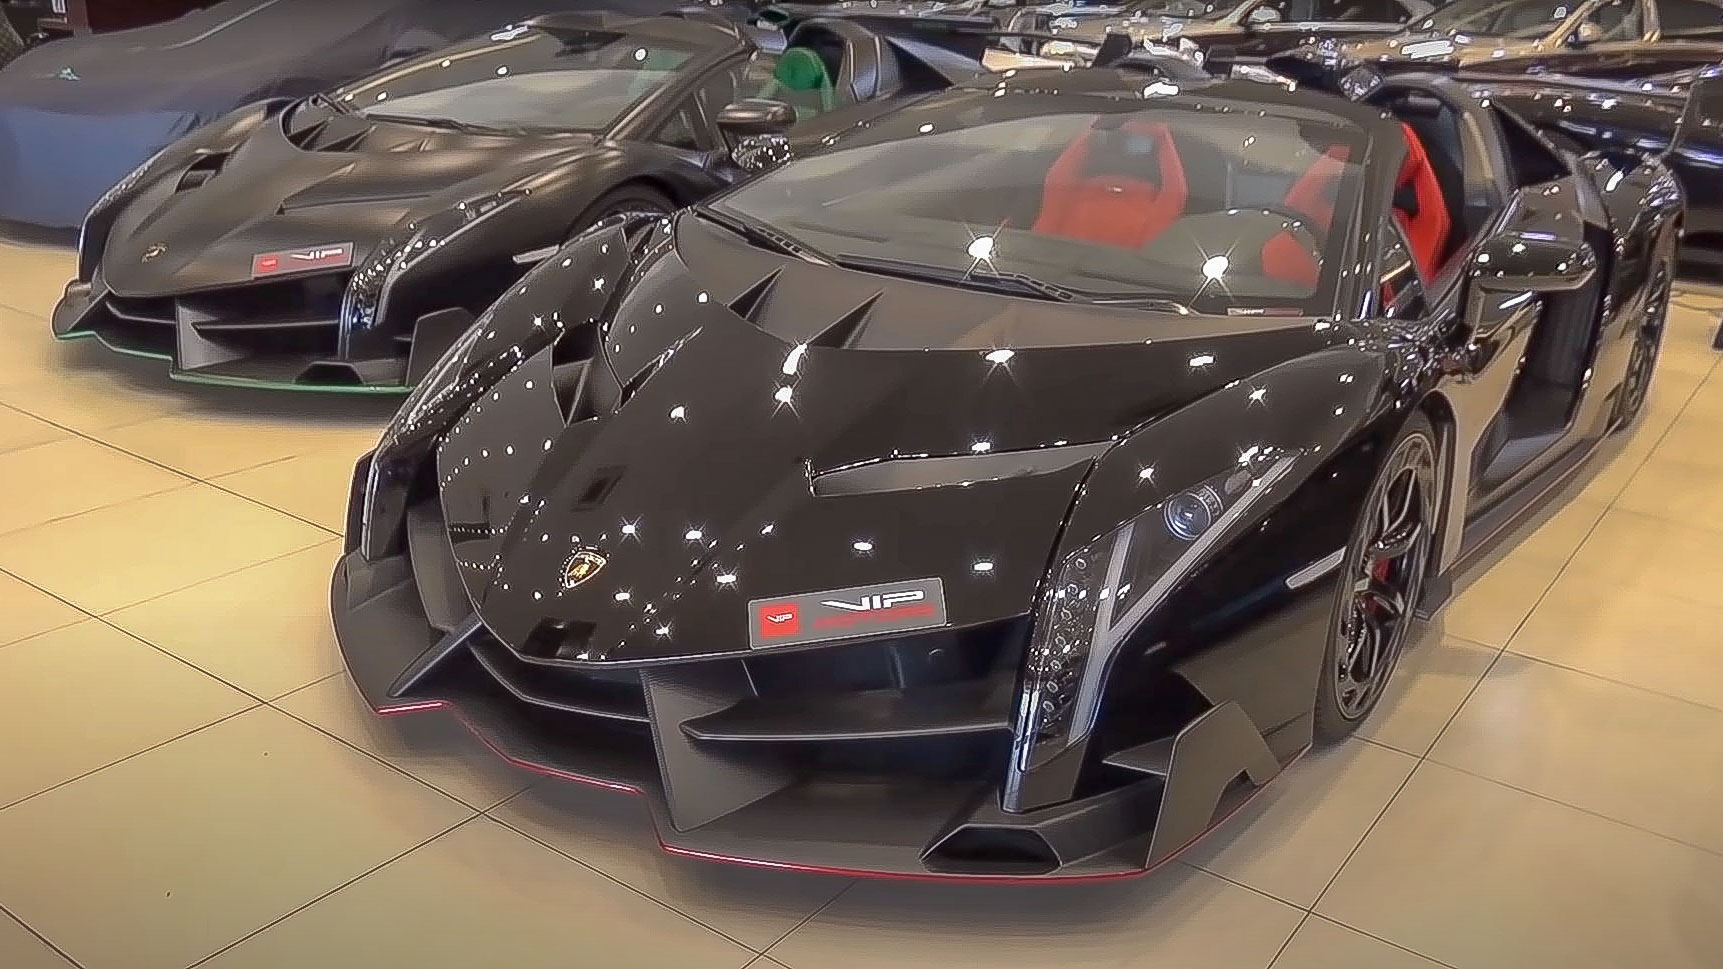 VIDEO: Vea a este par de Lamborghini Veneno juntos en Dubái y pida un deseo  - Fuel Car Magazine